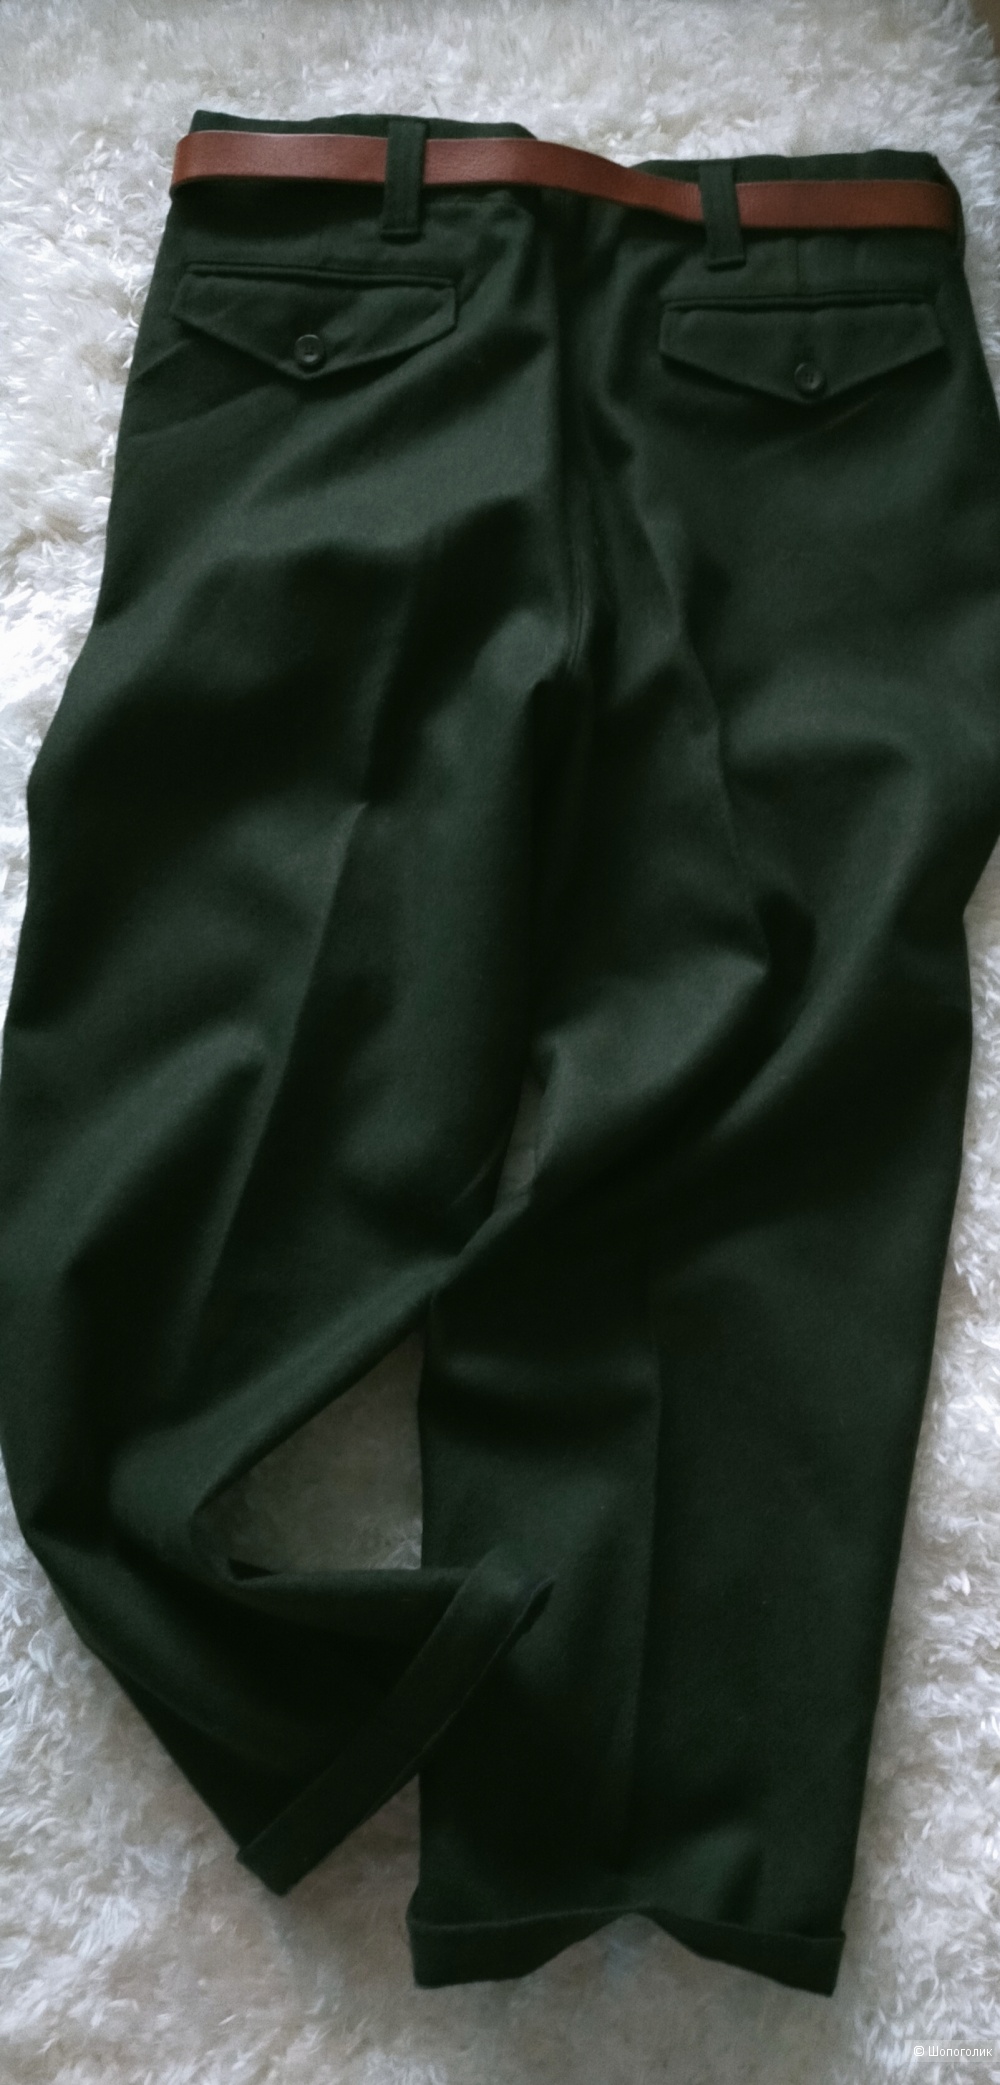 Шерстяные брюки L. l. Bean размер 46-48-50